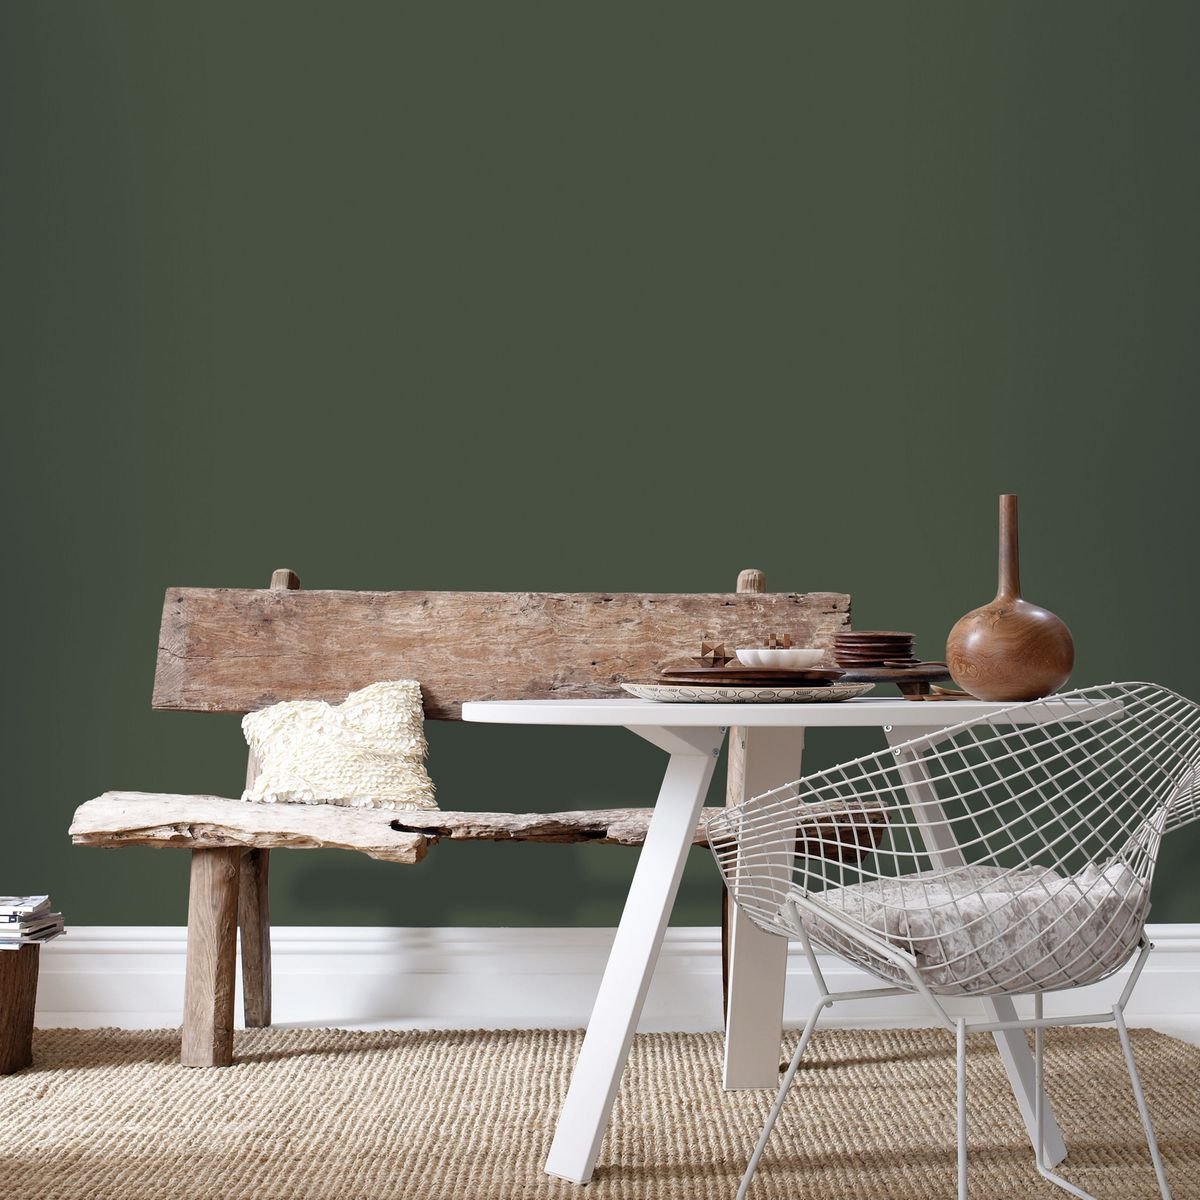 déco vert olive papier peint peinture mur salon salle à manger wabi sabi vintage design diamond chair vieux banc bois patine